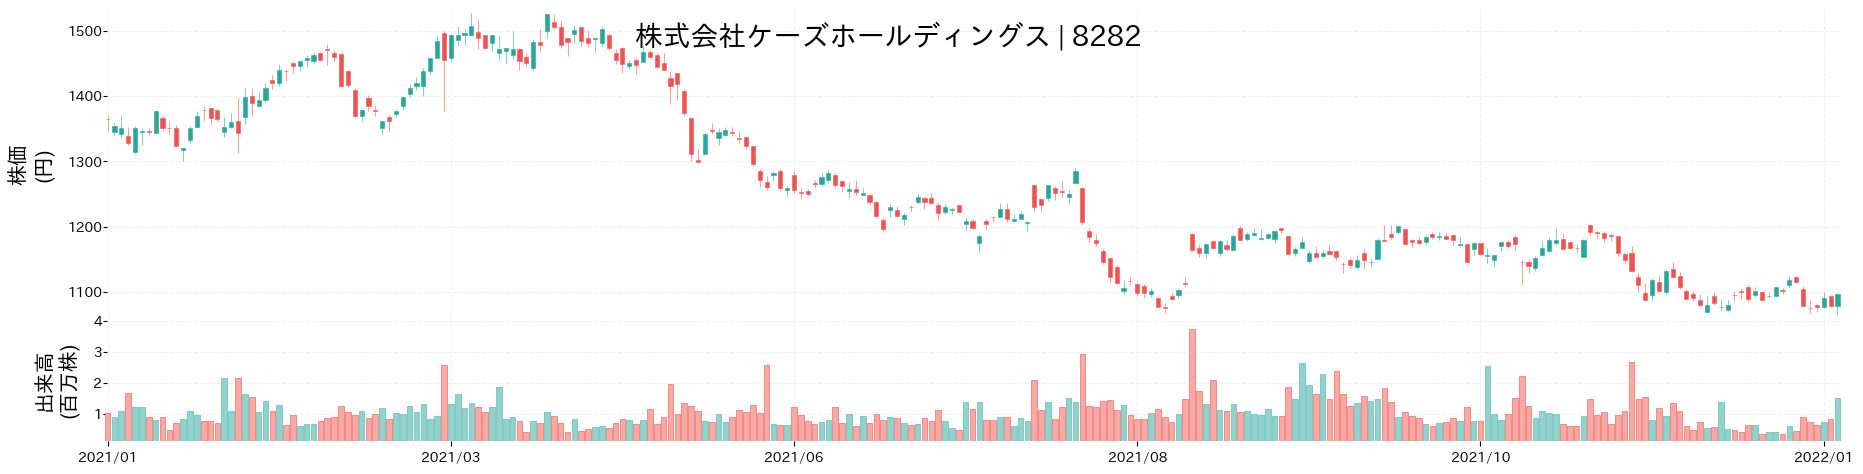 ケーズホールディングスの株価推移(2021)